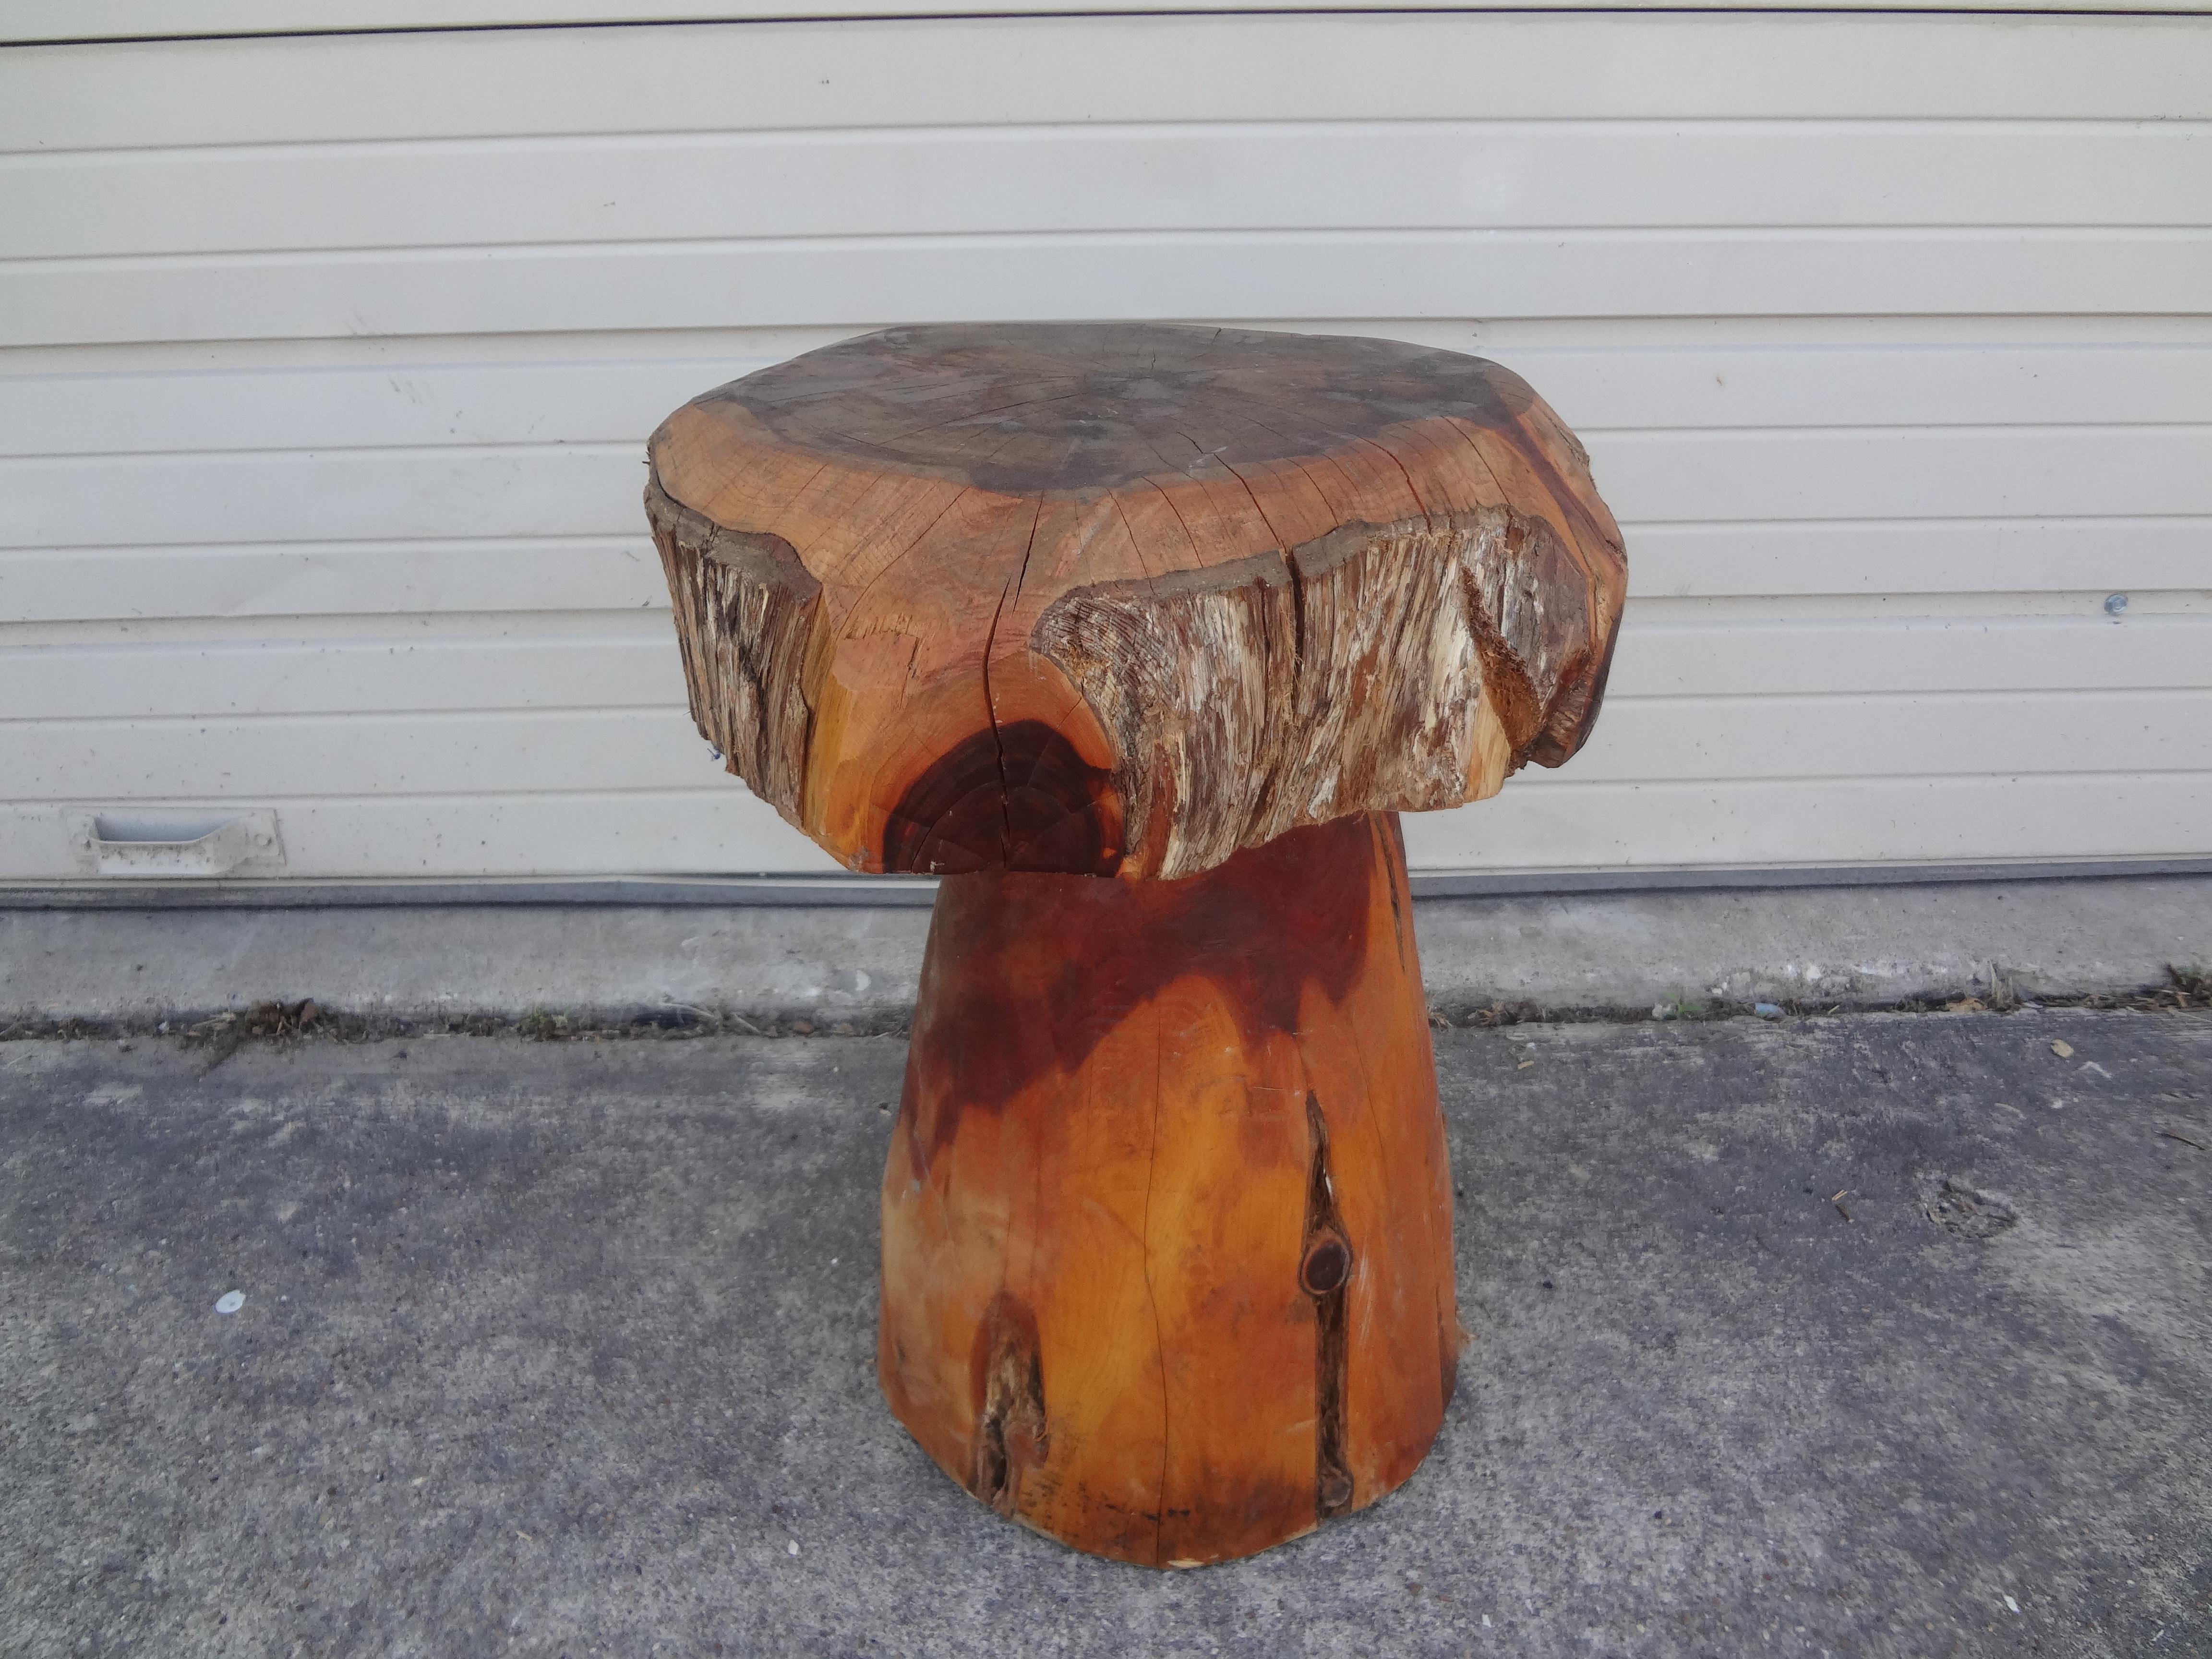 Table champignon moderne organique en bois sculpté. Cette belle table en bois sculpté du 20e siècle en forme de champignon est une excellente table d'appoint qui fonctionne bien. 
dans de nombreux intérieurs.